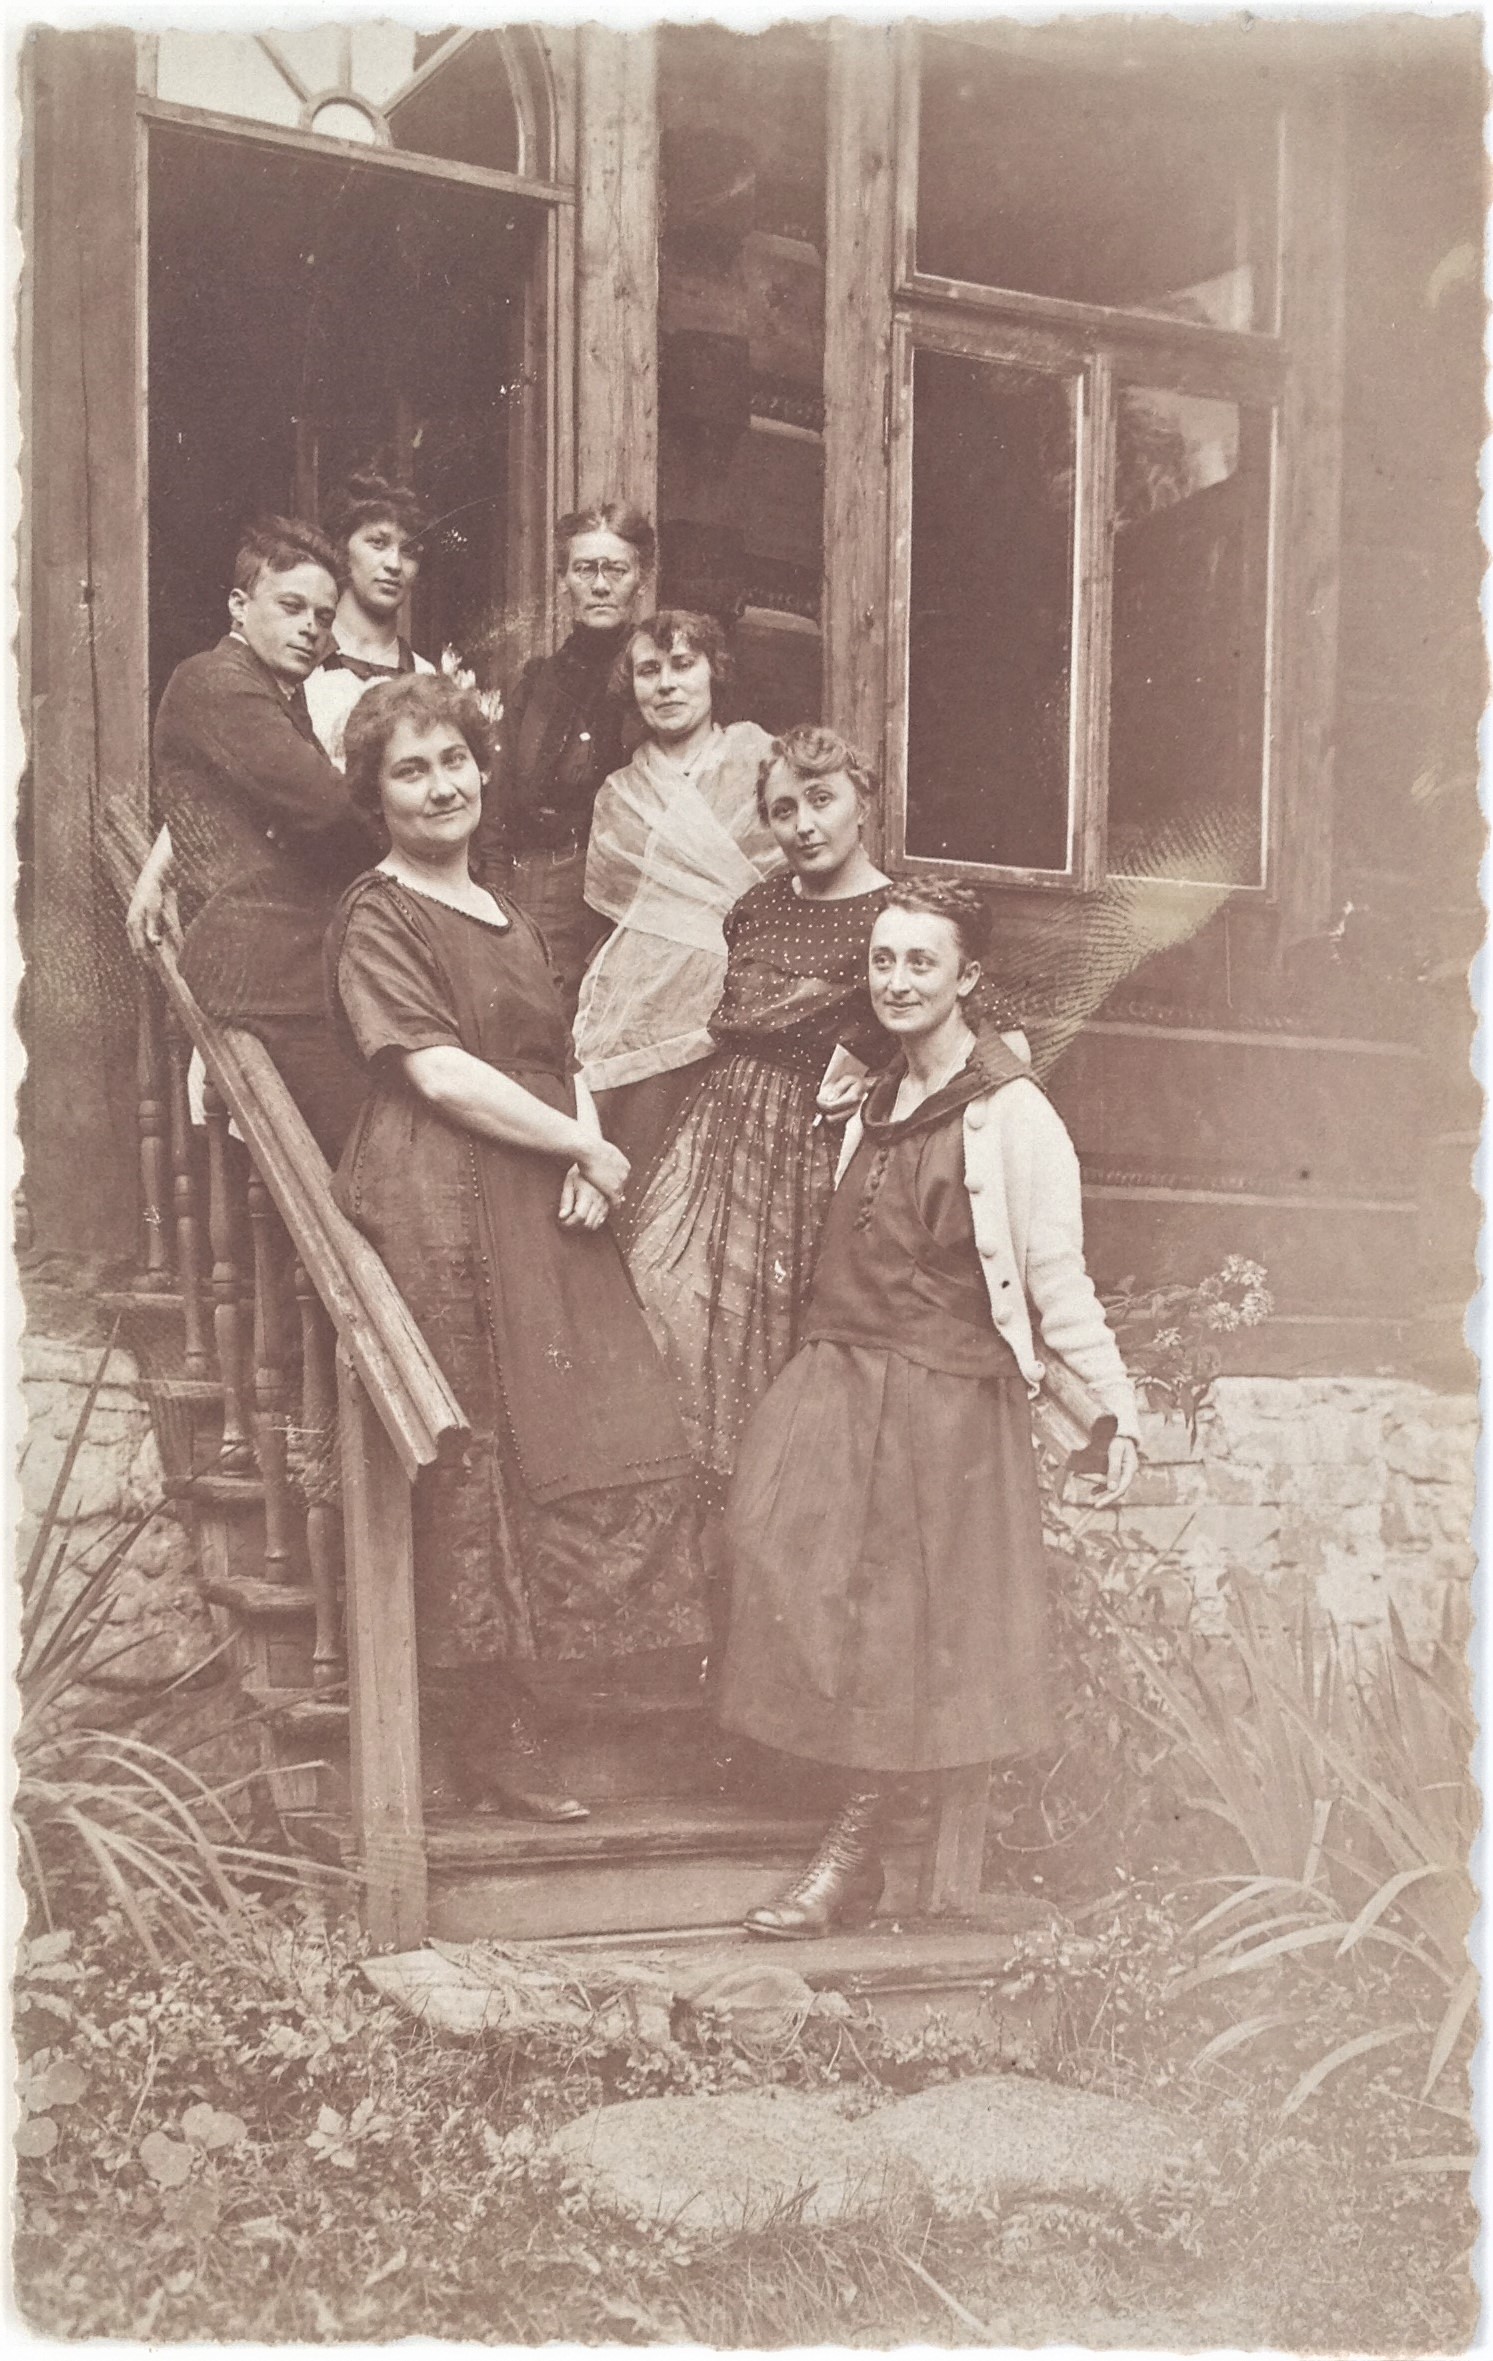 Fotografia czarno-biała. Przedstawia grupę ludzi stojących na schodach domu